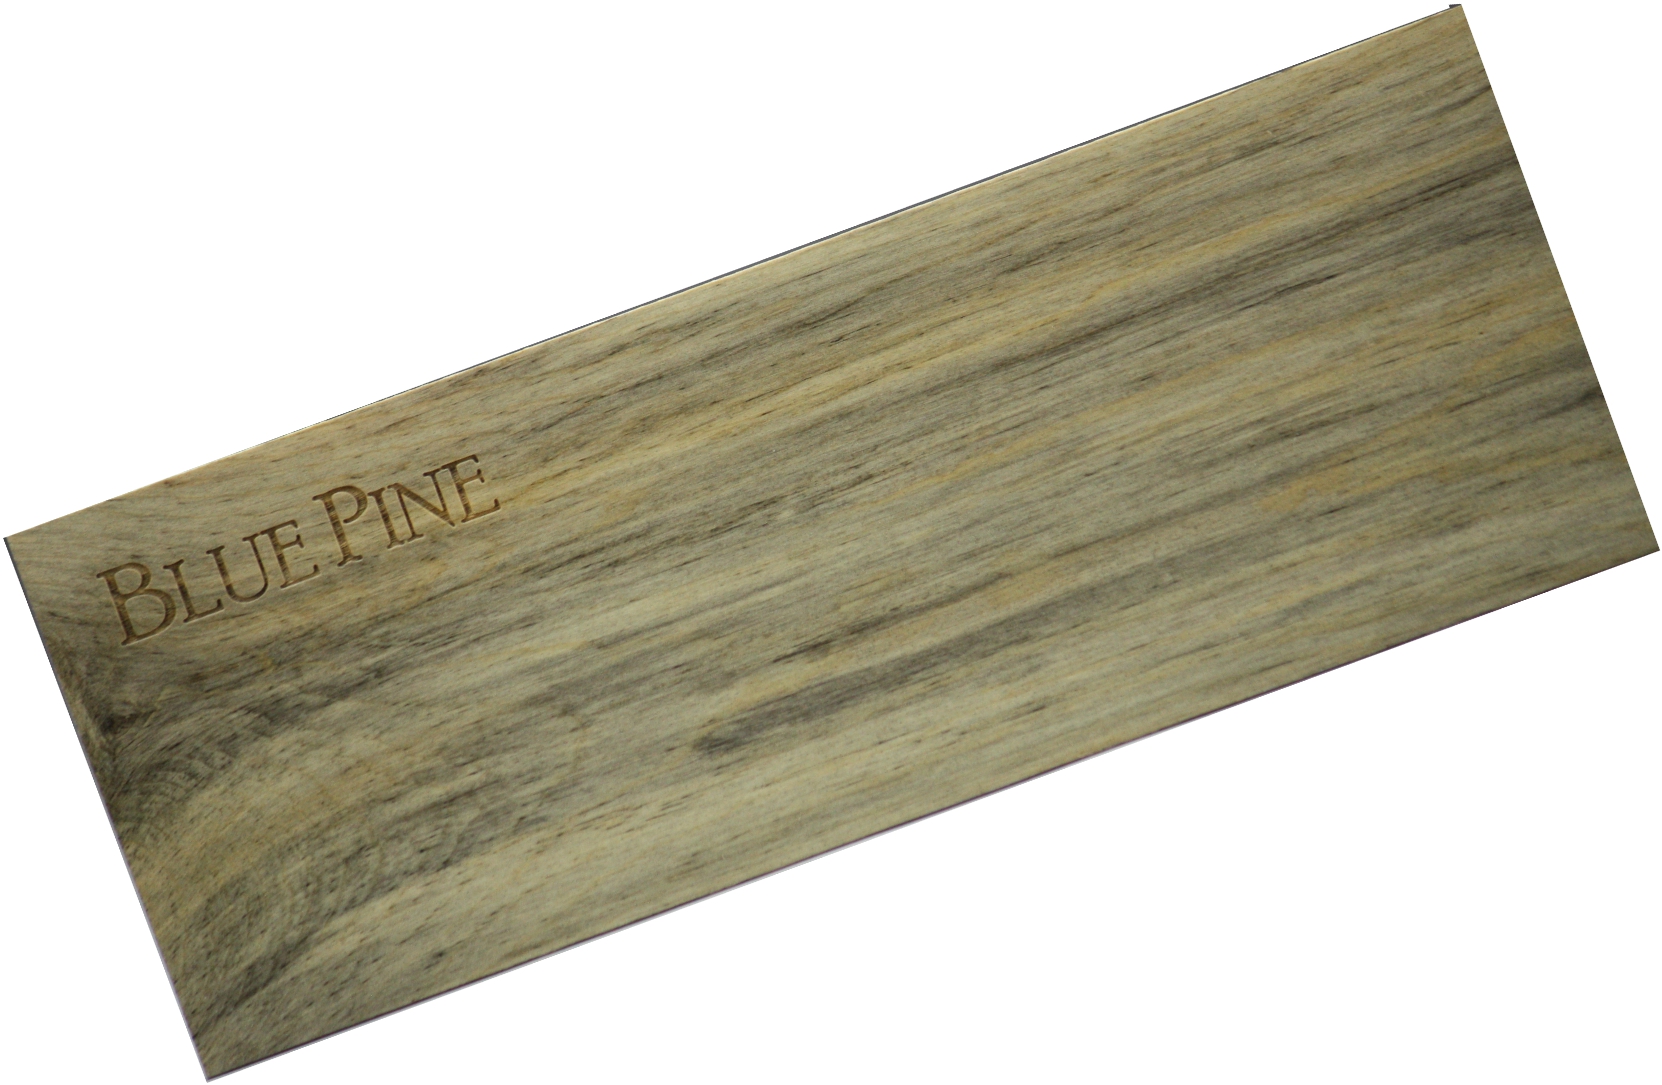 Wood Strip (Alder/Maple/Cherry/Blue Pine) 4.5" x 16" x  (1/16", 3/32", 1/8", 3/16" or 1/4") - LSTX416-Alder-Maple-Cherry-BluePine-A-1/8-F